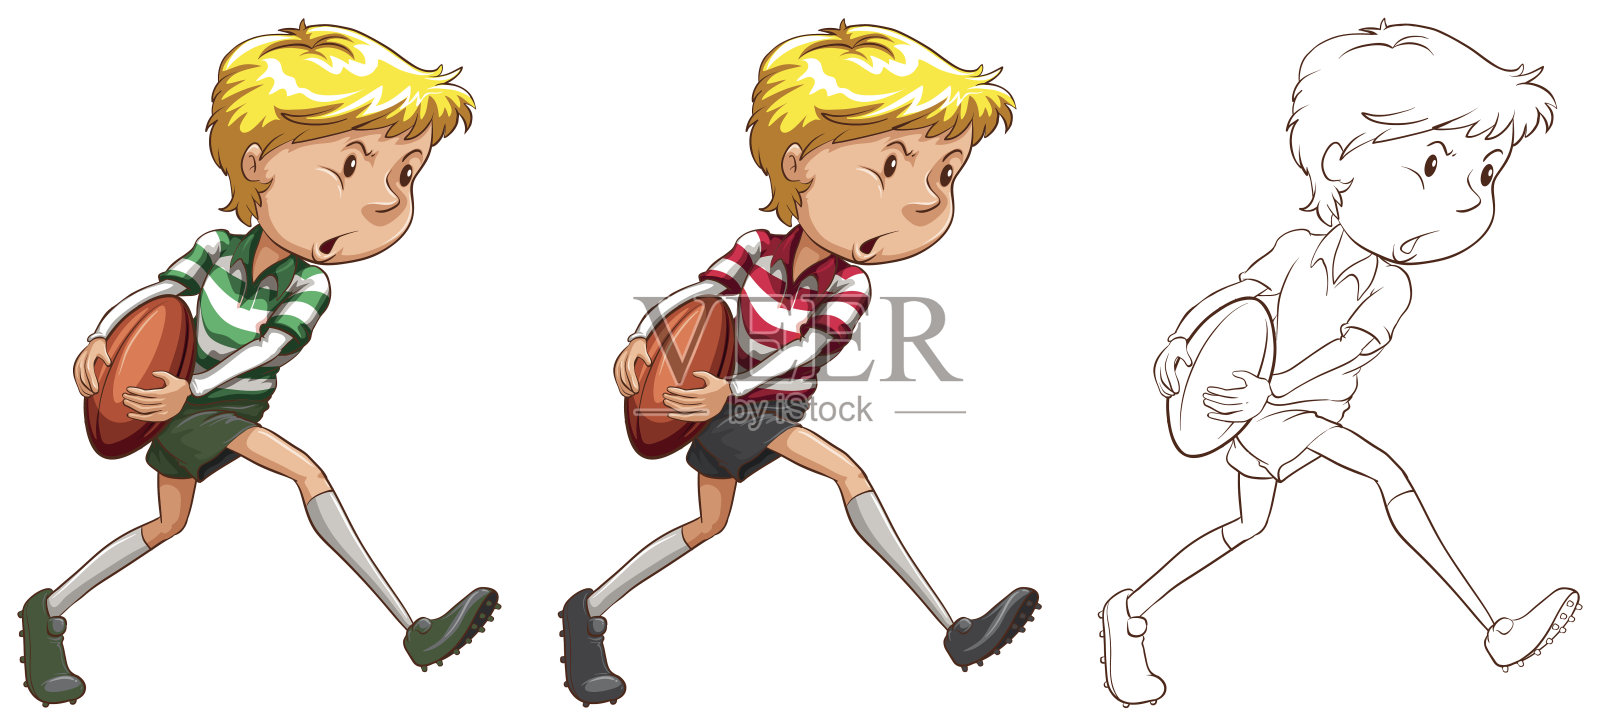 橄榄球运动员在三种不同的绘画风格插画图片素材